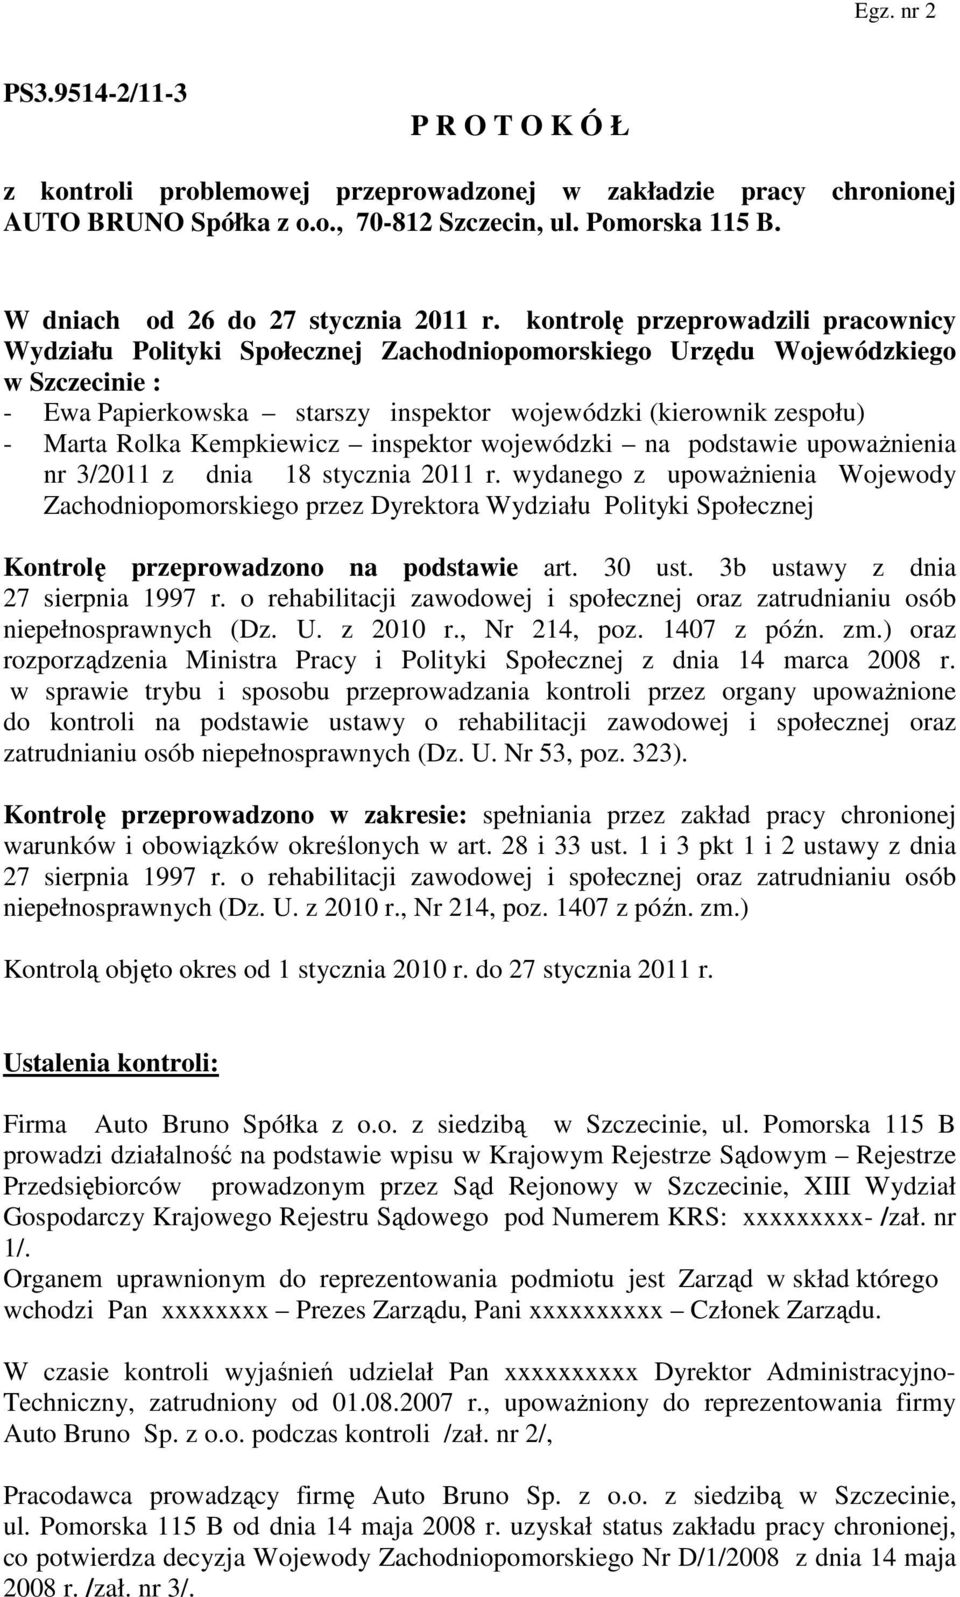 Rolka Kempkiewicz inspektor wojewódzki na podstawie upoważnienia nr 3/2011 z dnia 18 stycznia 2011 r.